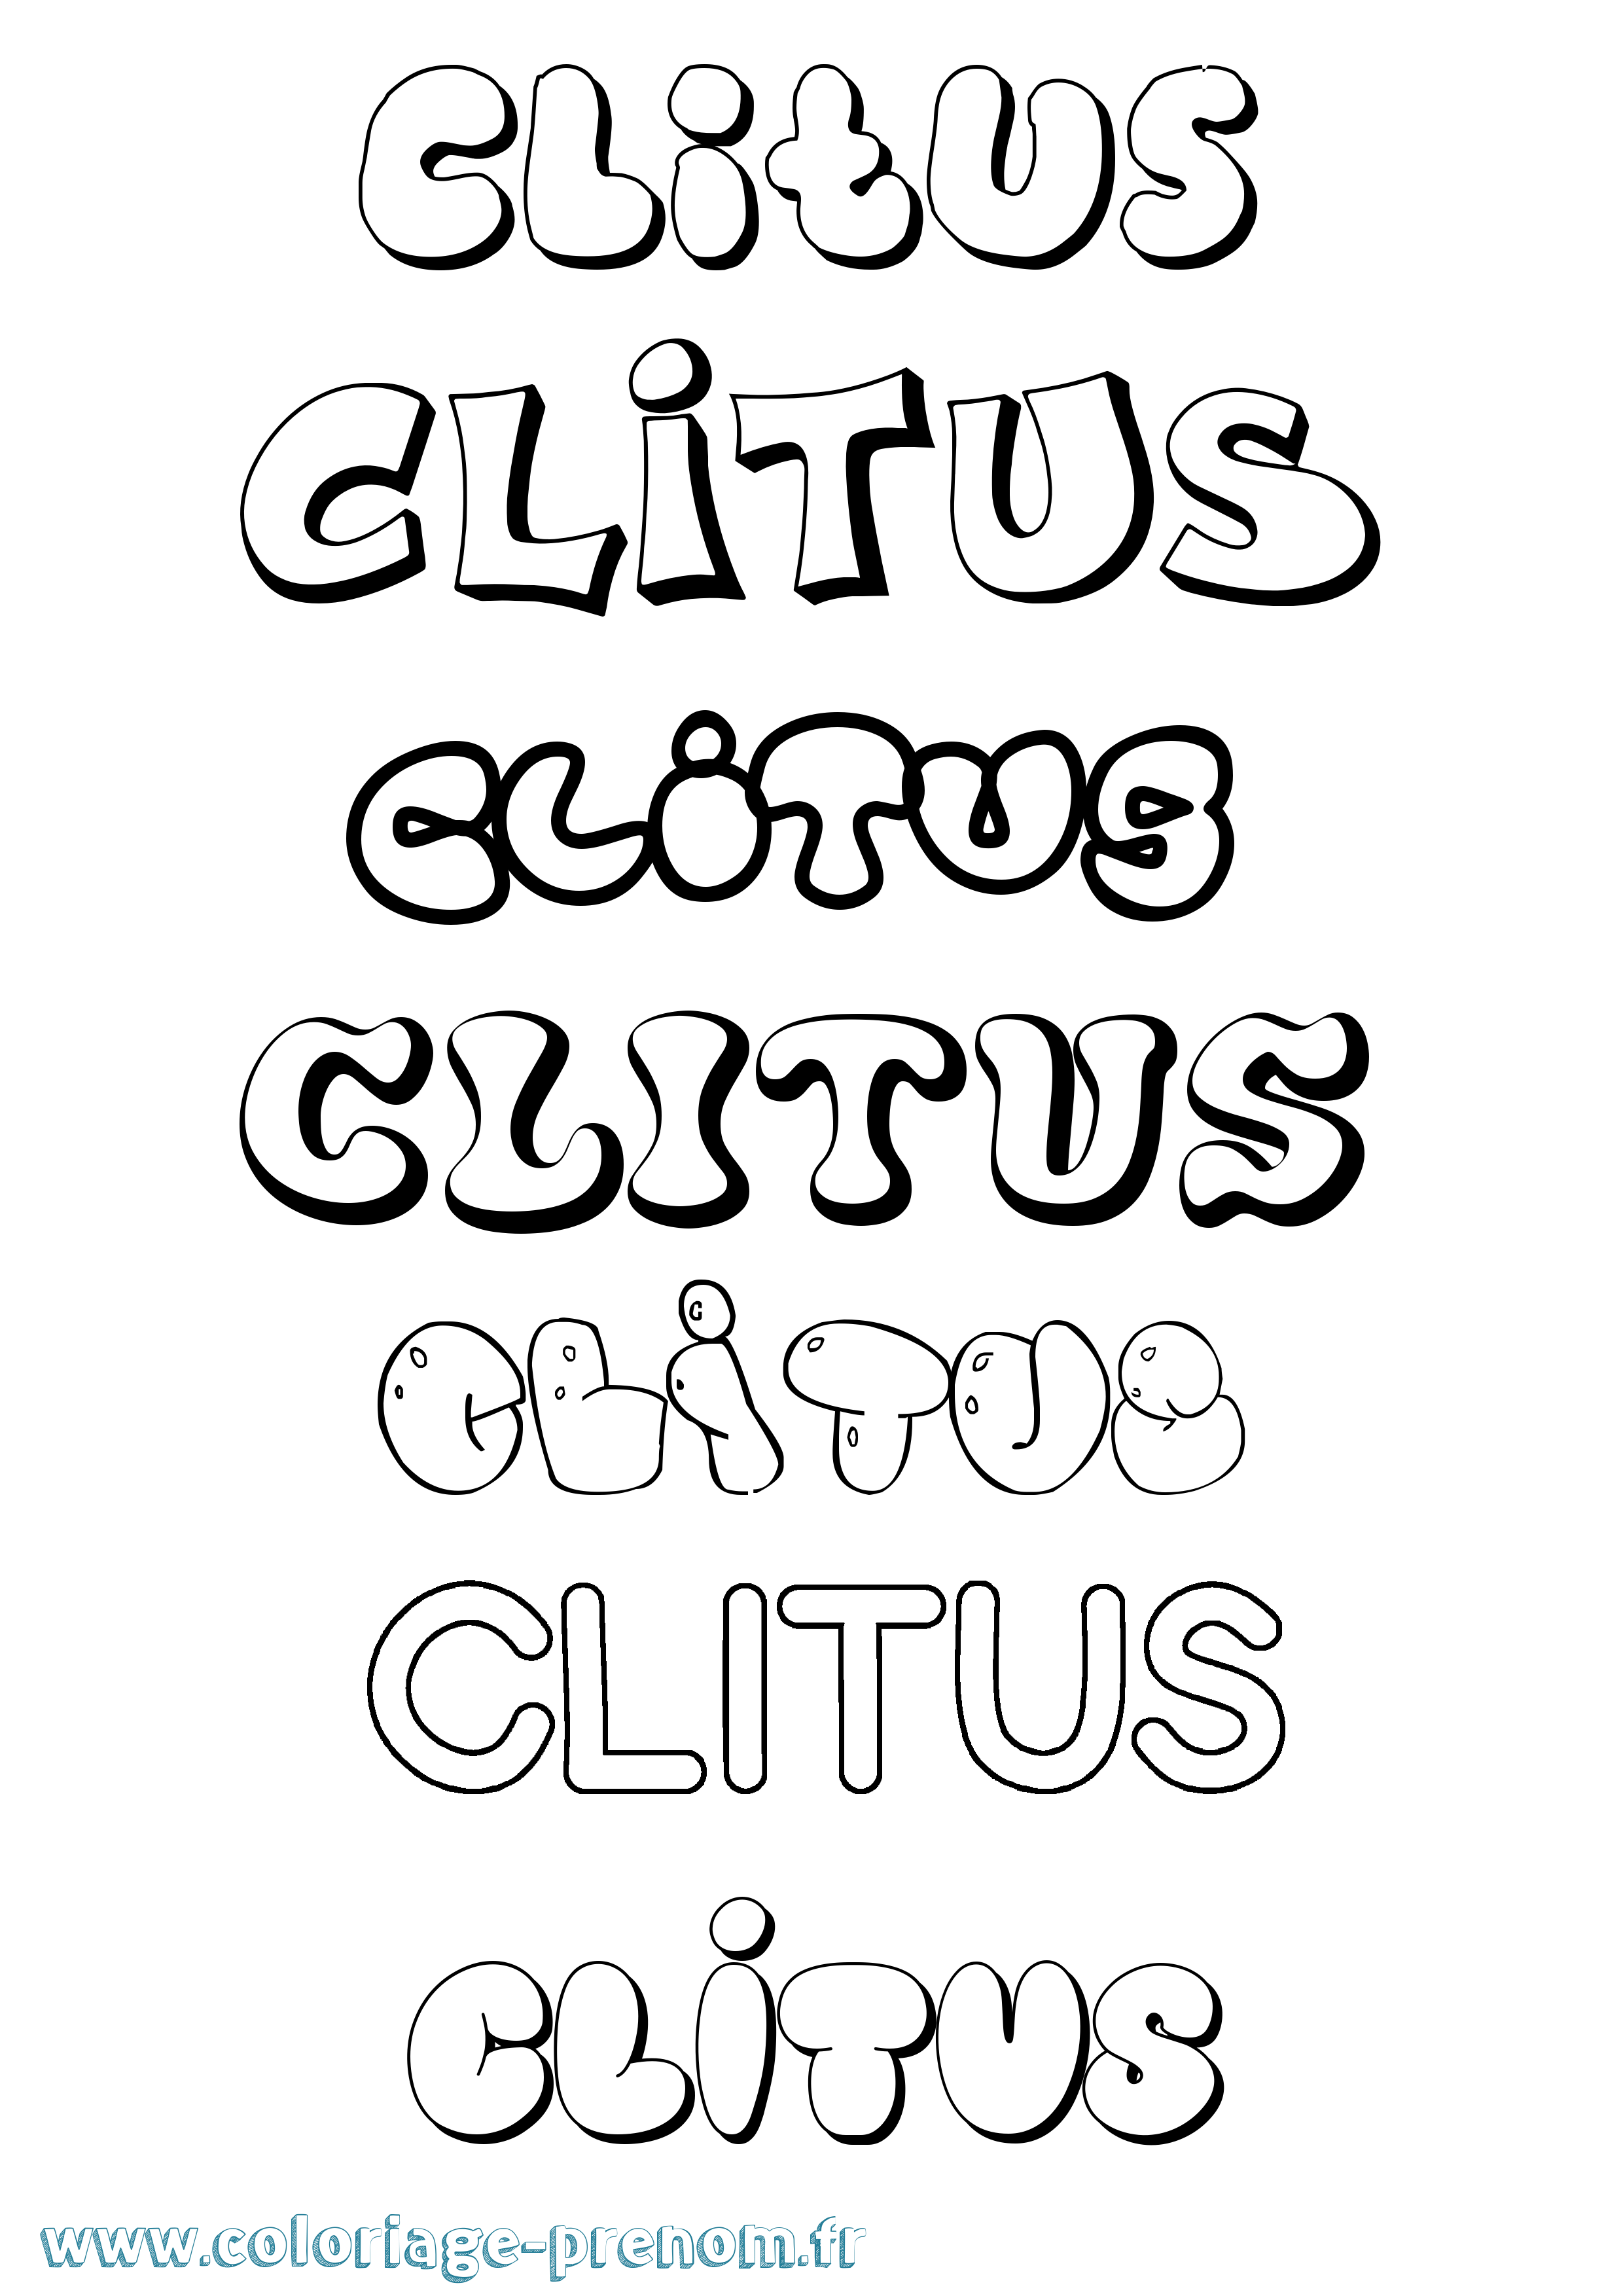 Coloriage prénom Clitus Bubble